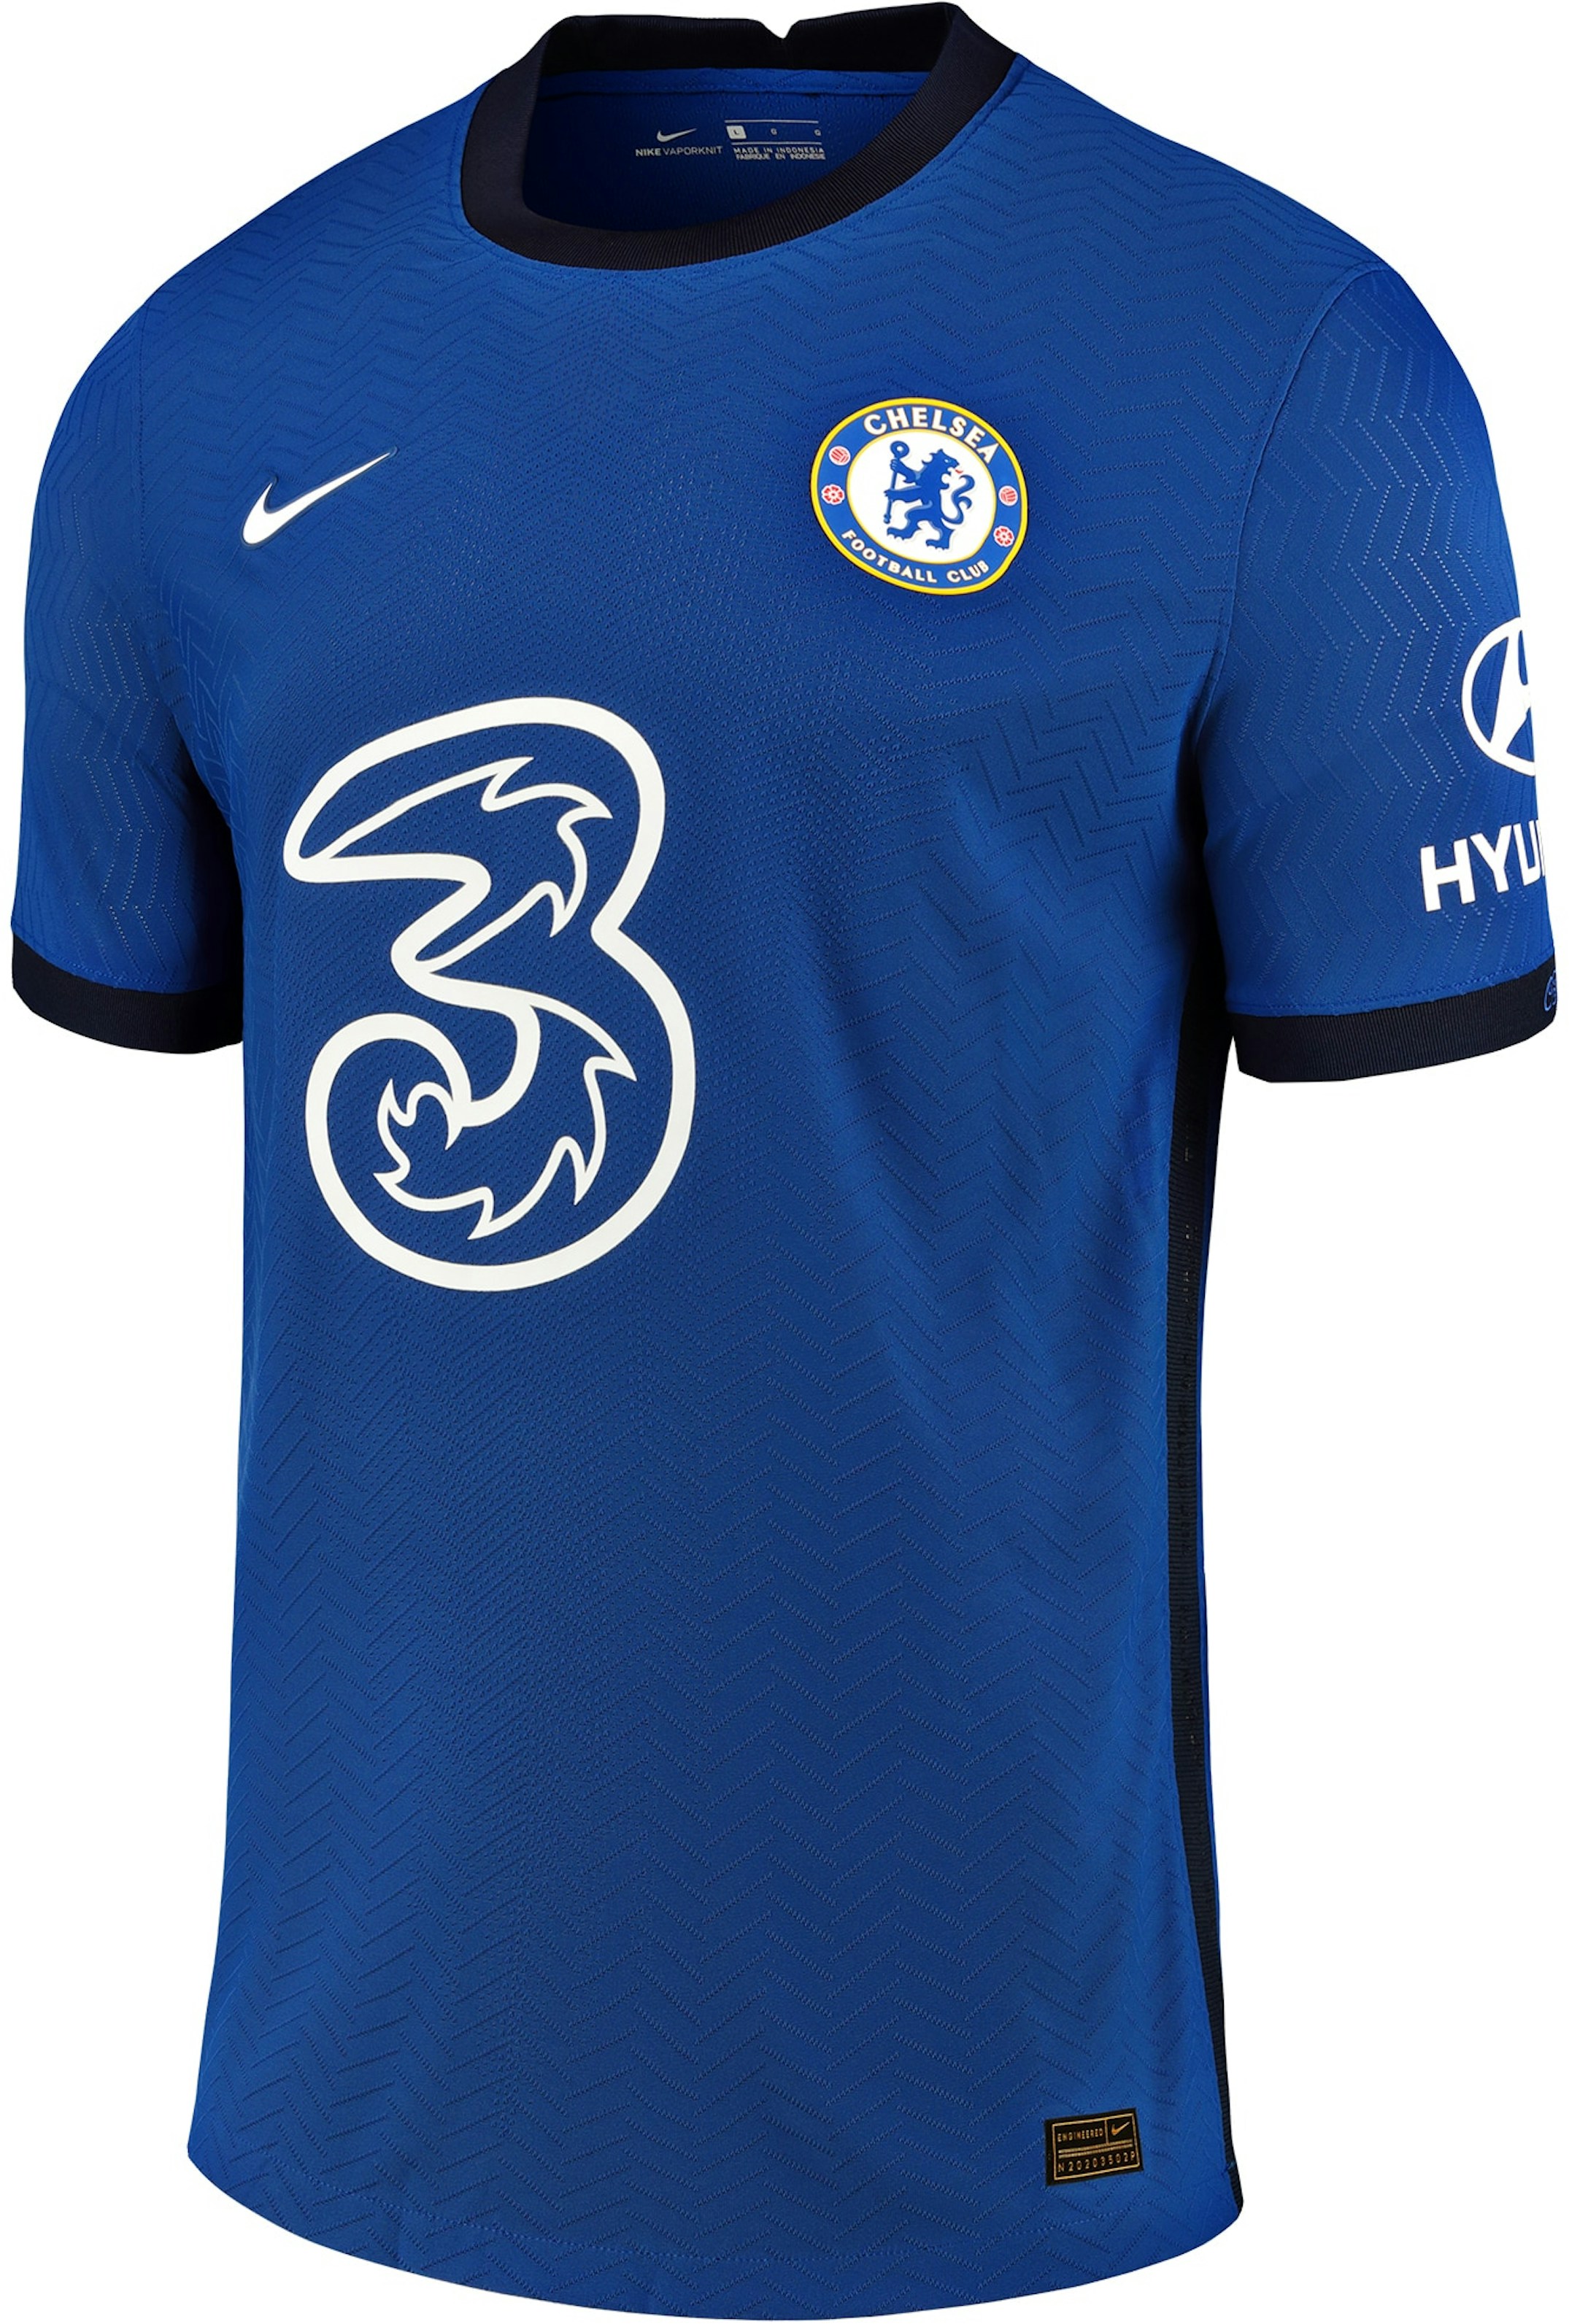 Nike Chelsea Home Vapor Match Shirt 202021 Jersey Blue